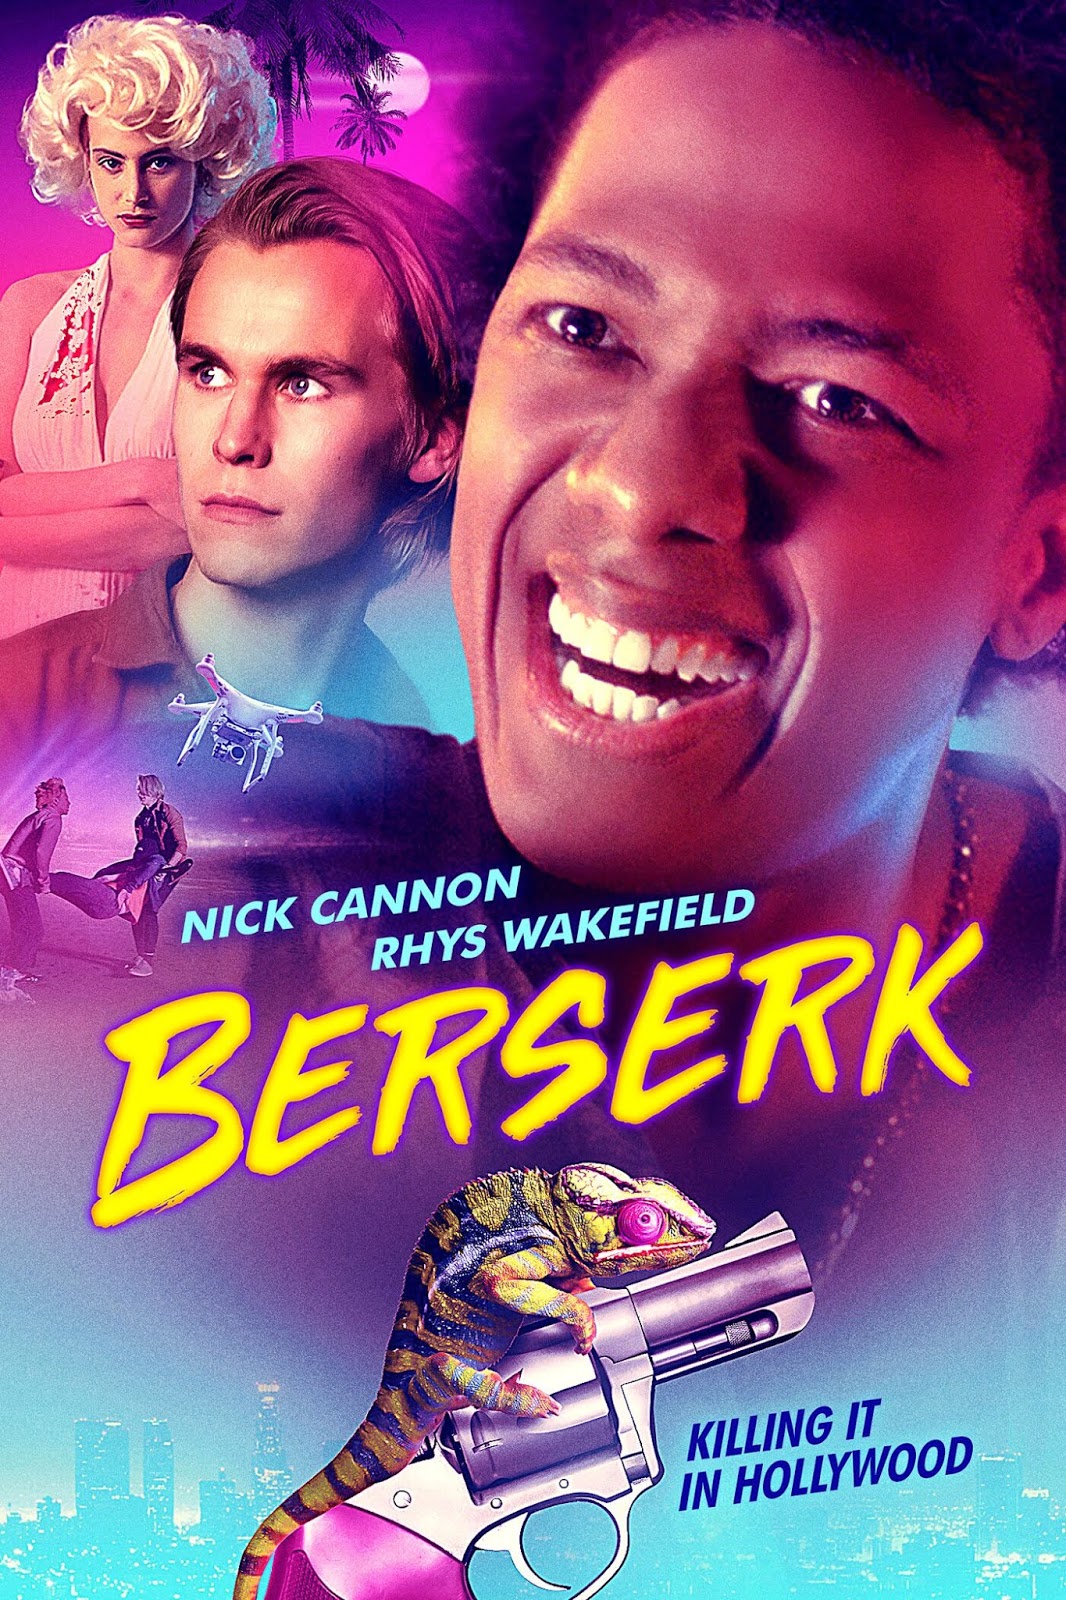 Better Off Dead: "Berserk" an insipid neo-noir with reason to